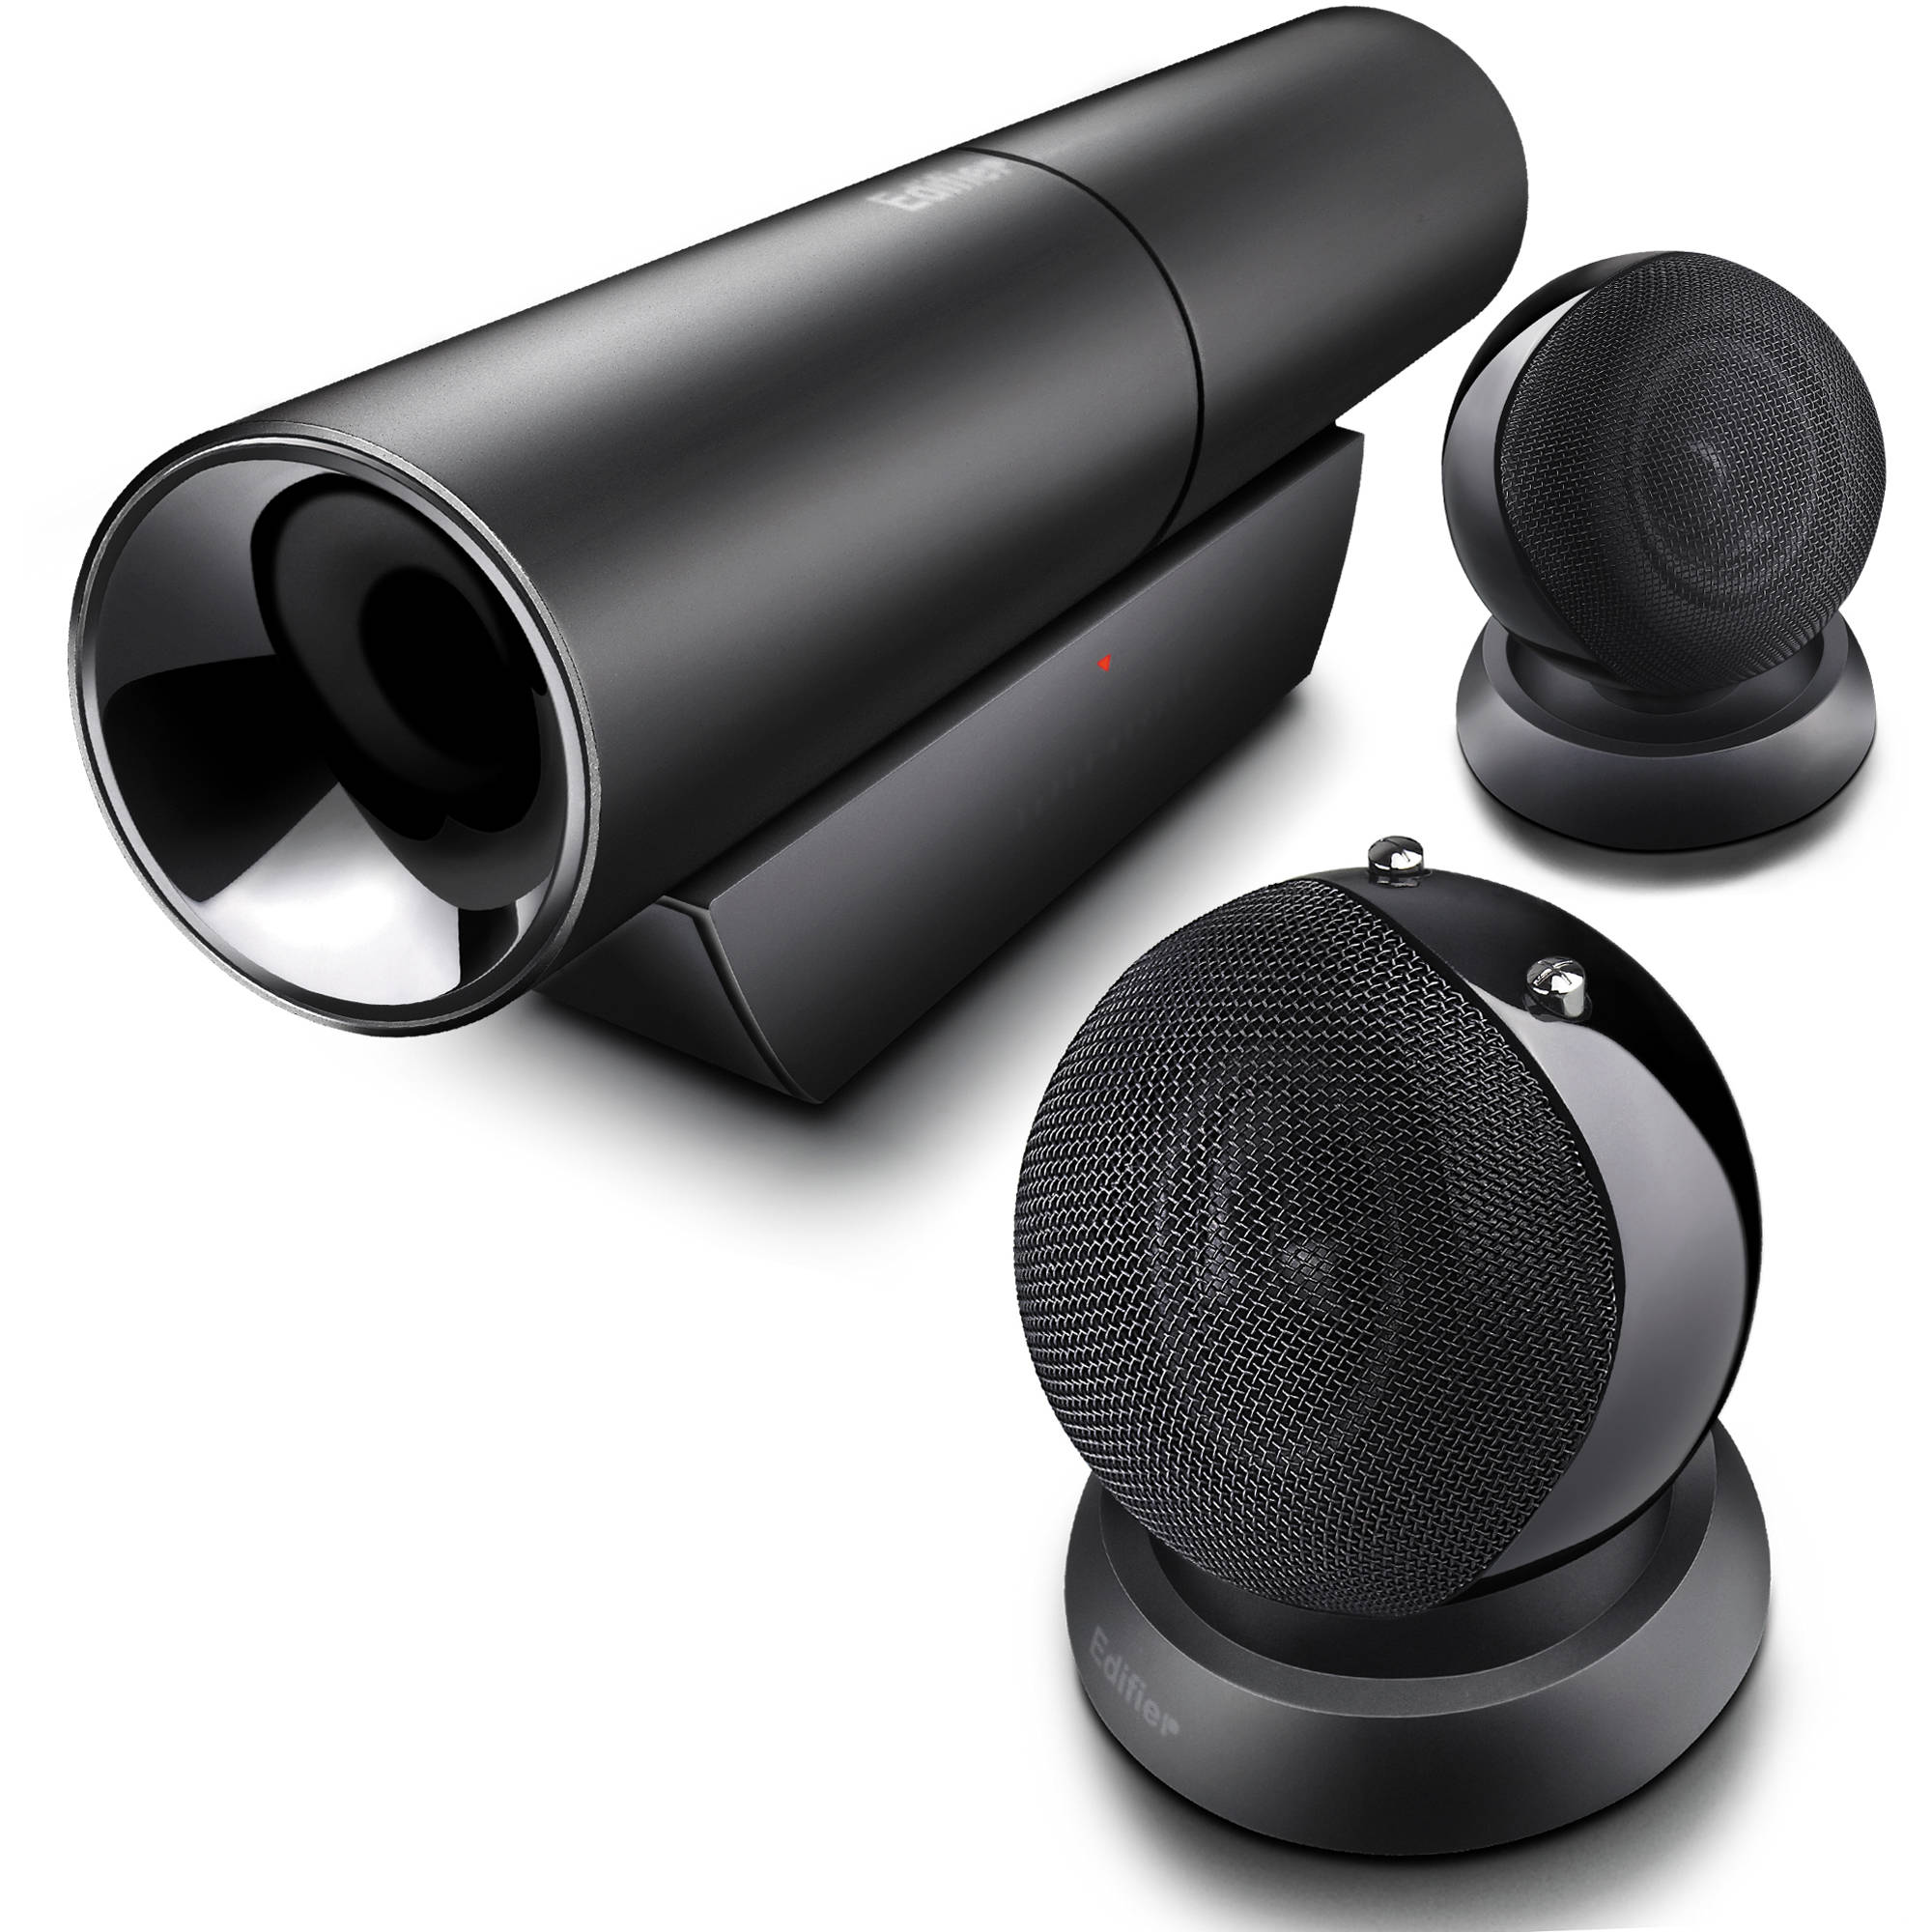 Edifier Aurora 2.1 Speaker System for 